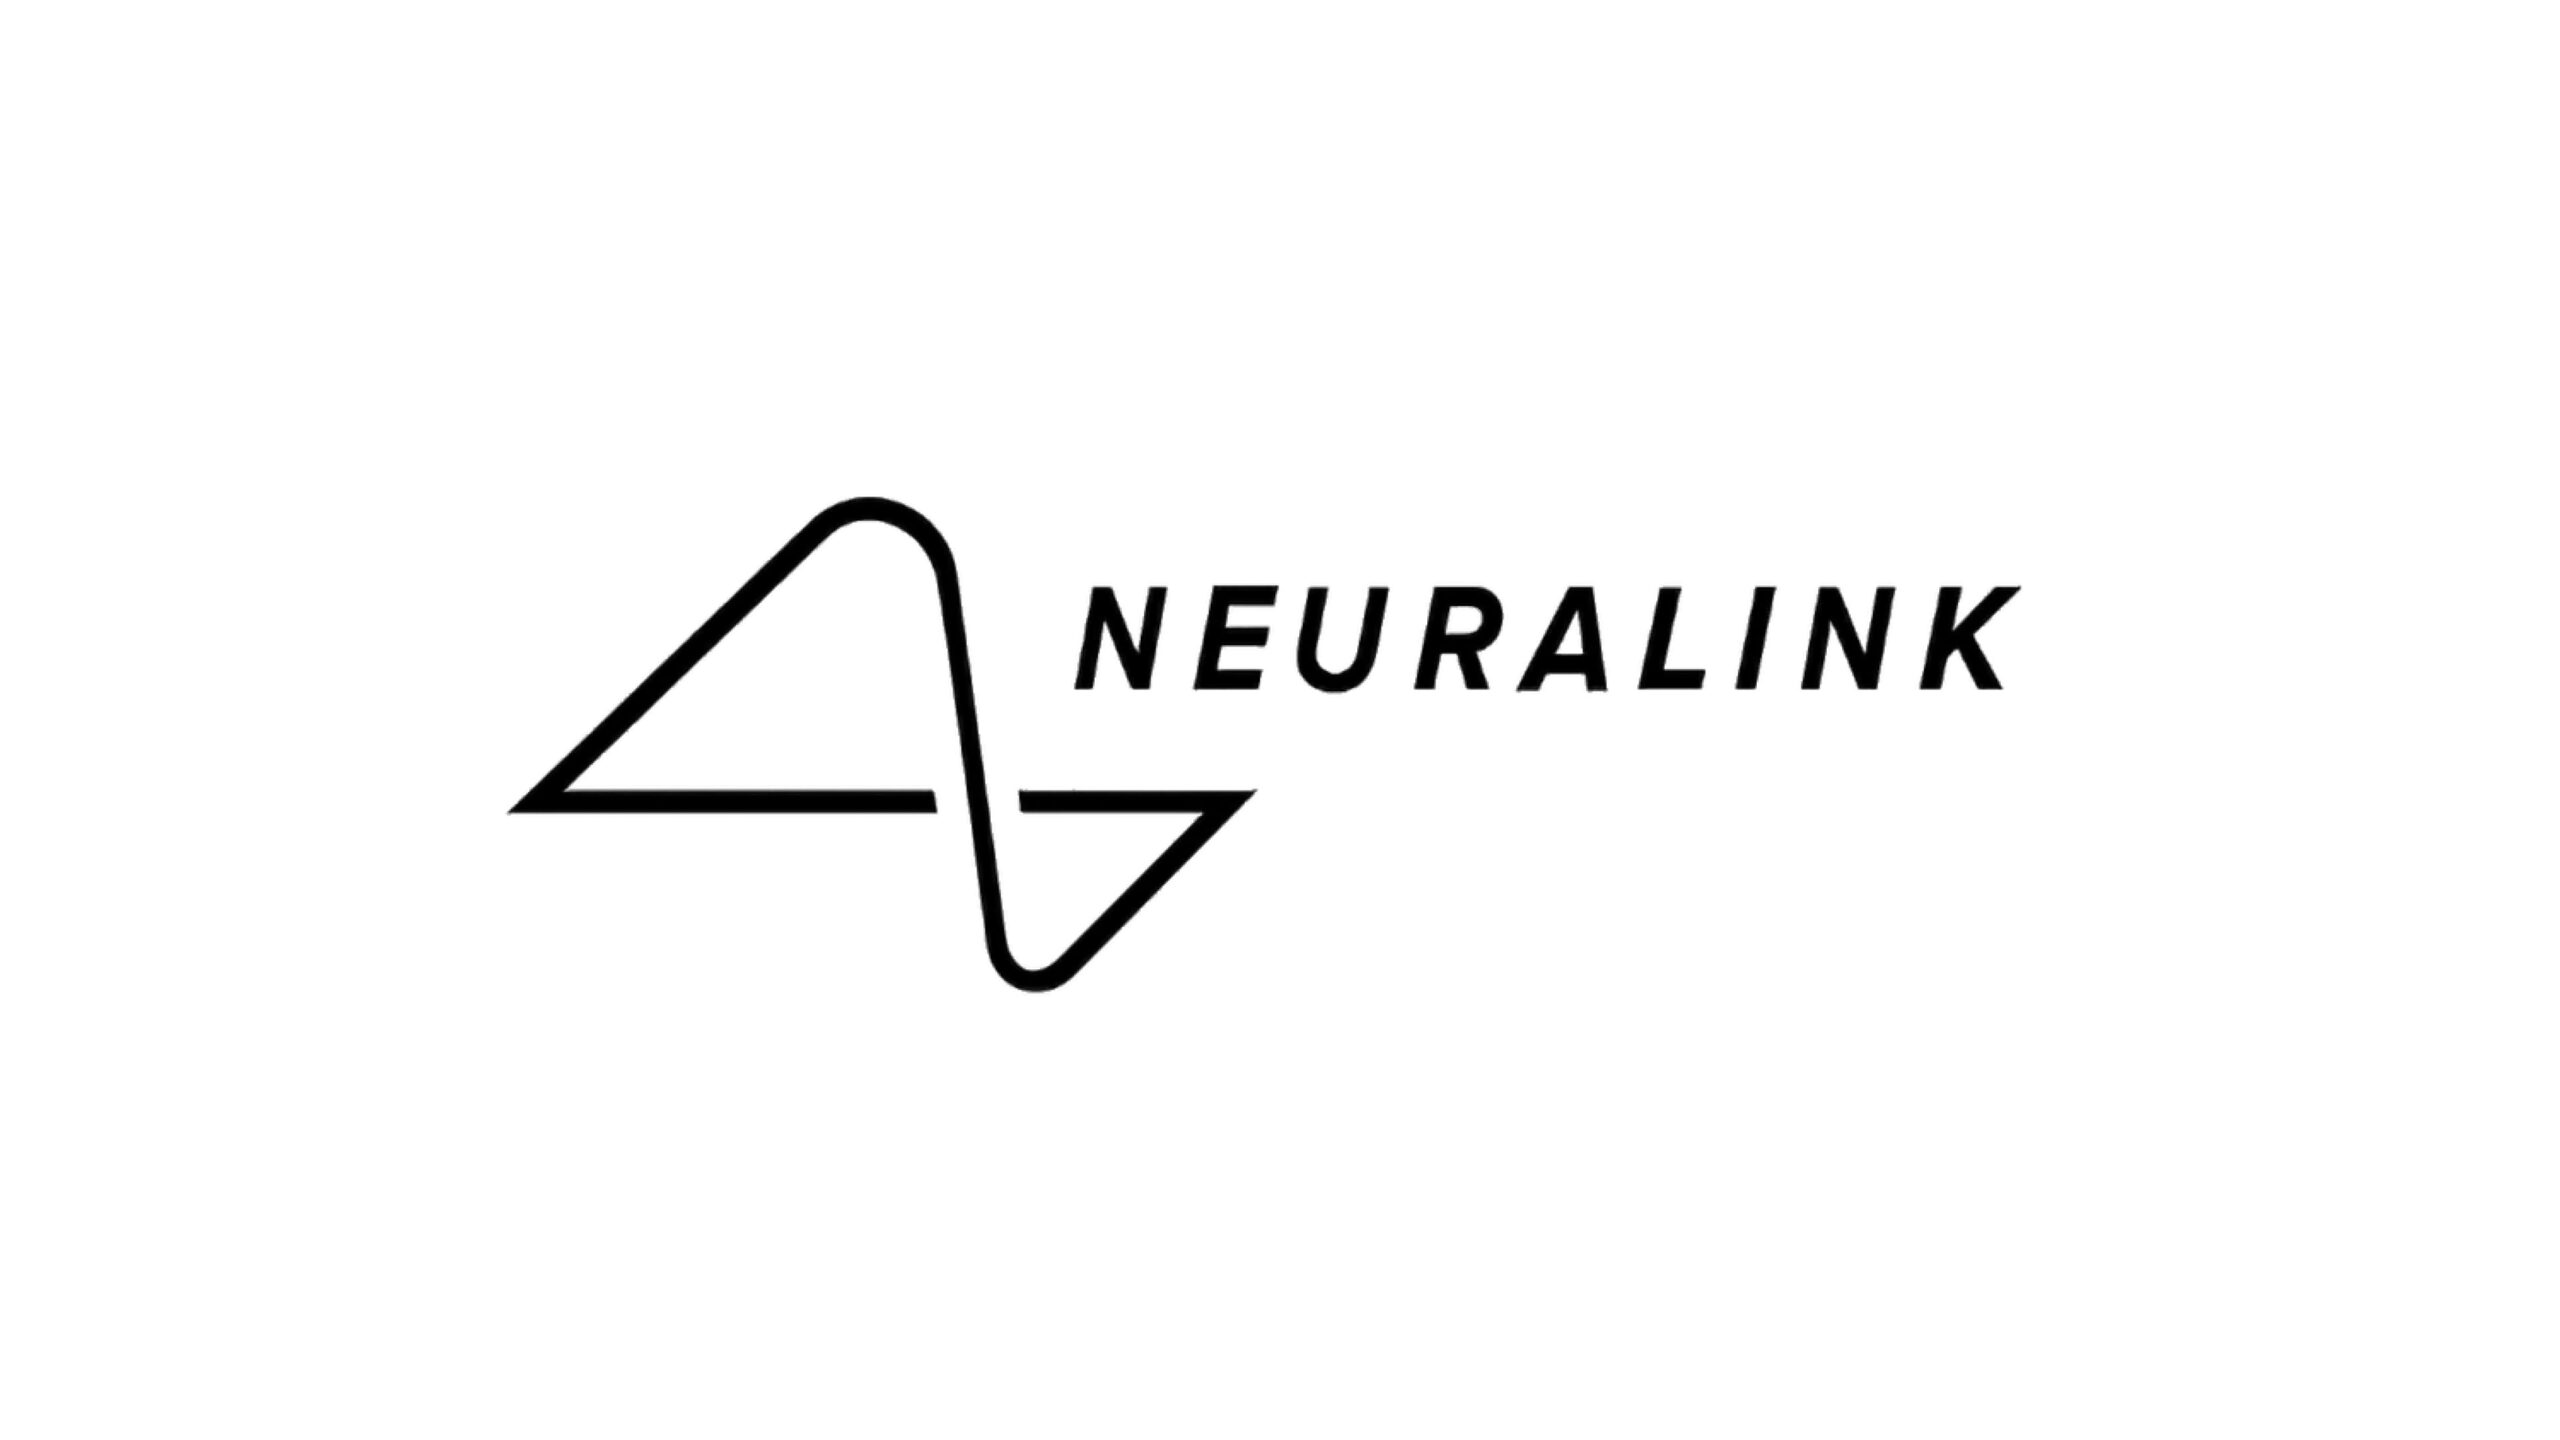 Neuralink、イーロン・マスクの脳インプラントスタートアップ、追加で4300万ドルを調達